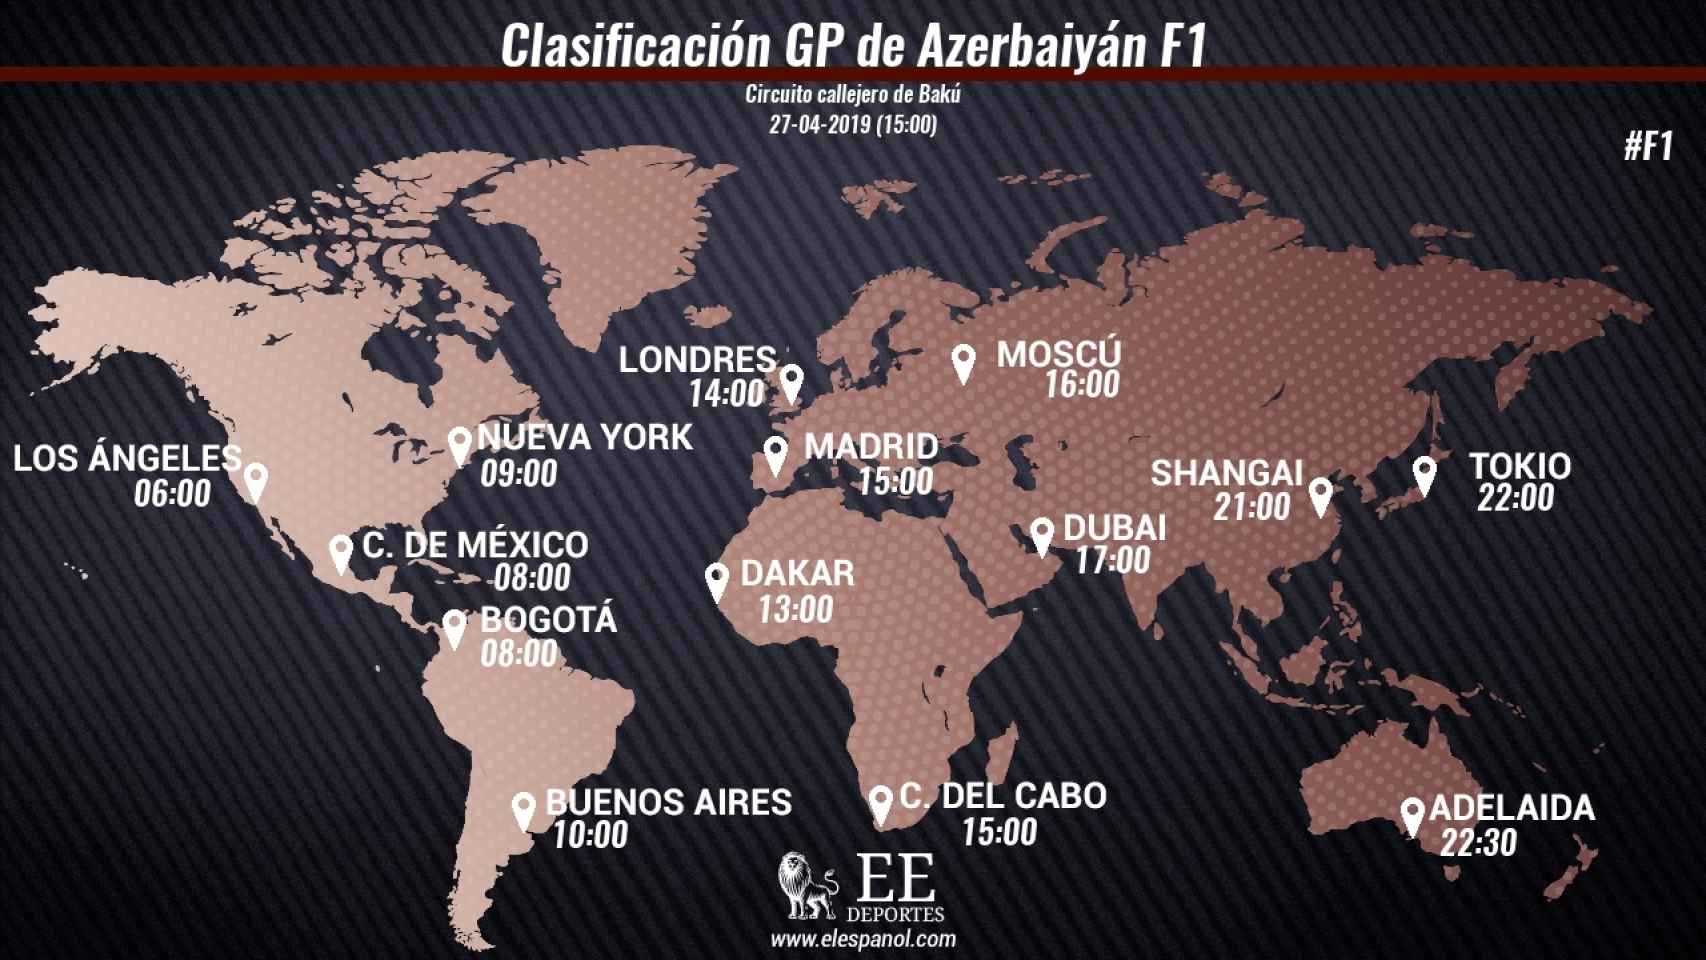 Horario clasificación GP de Azerbaiyán